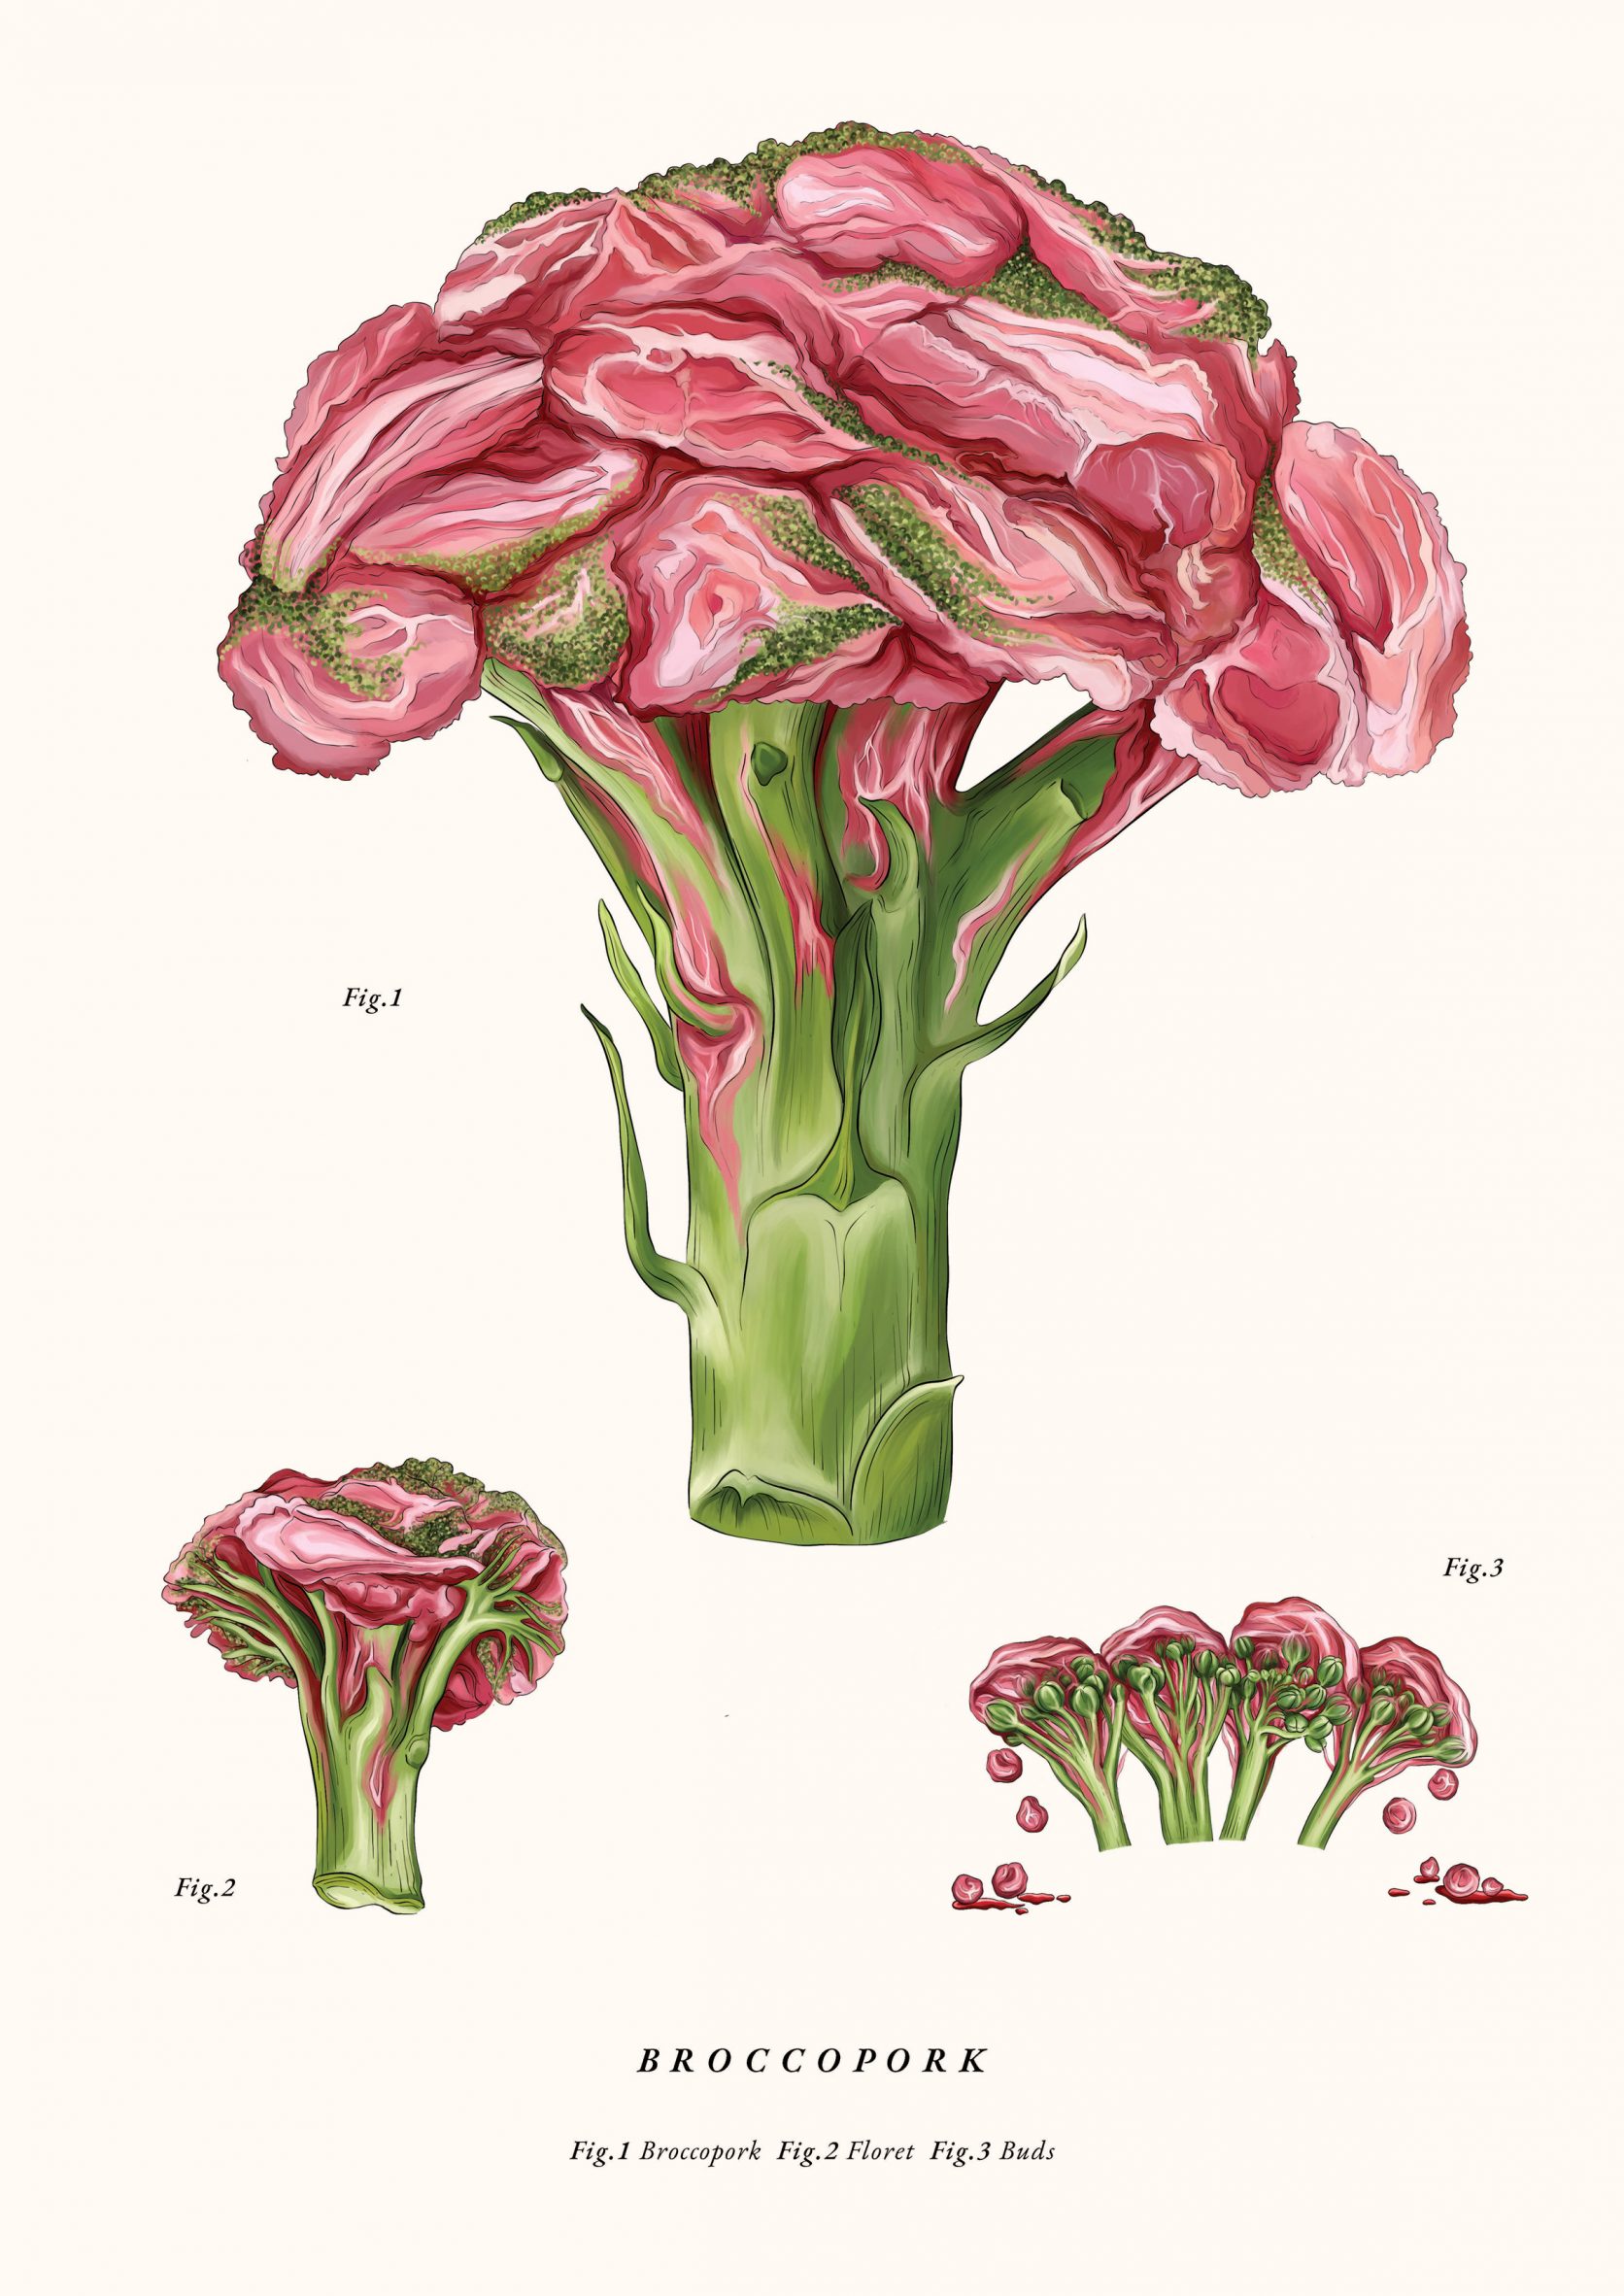 Broccopork illustration by Leyu Li